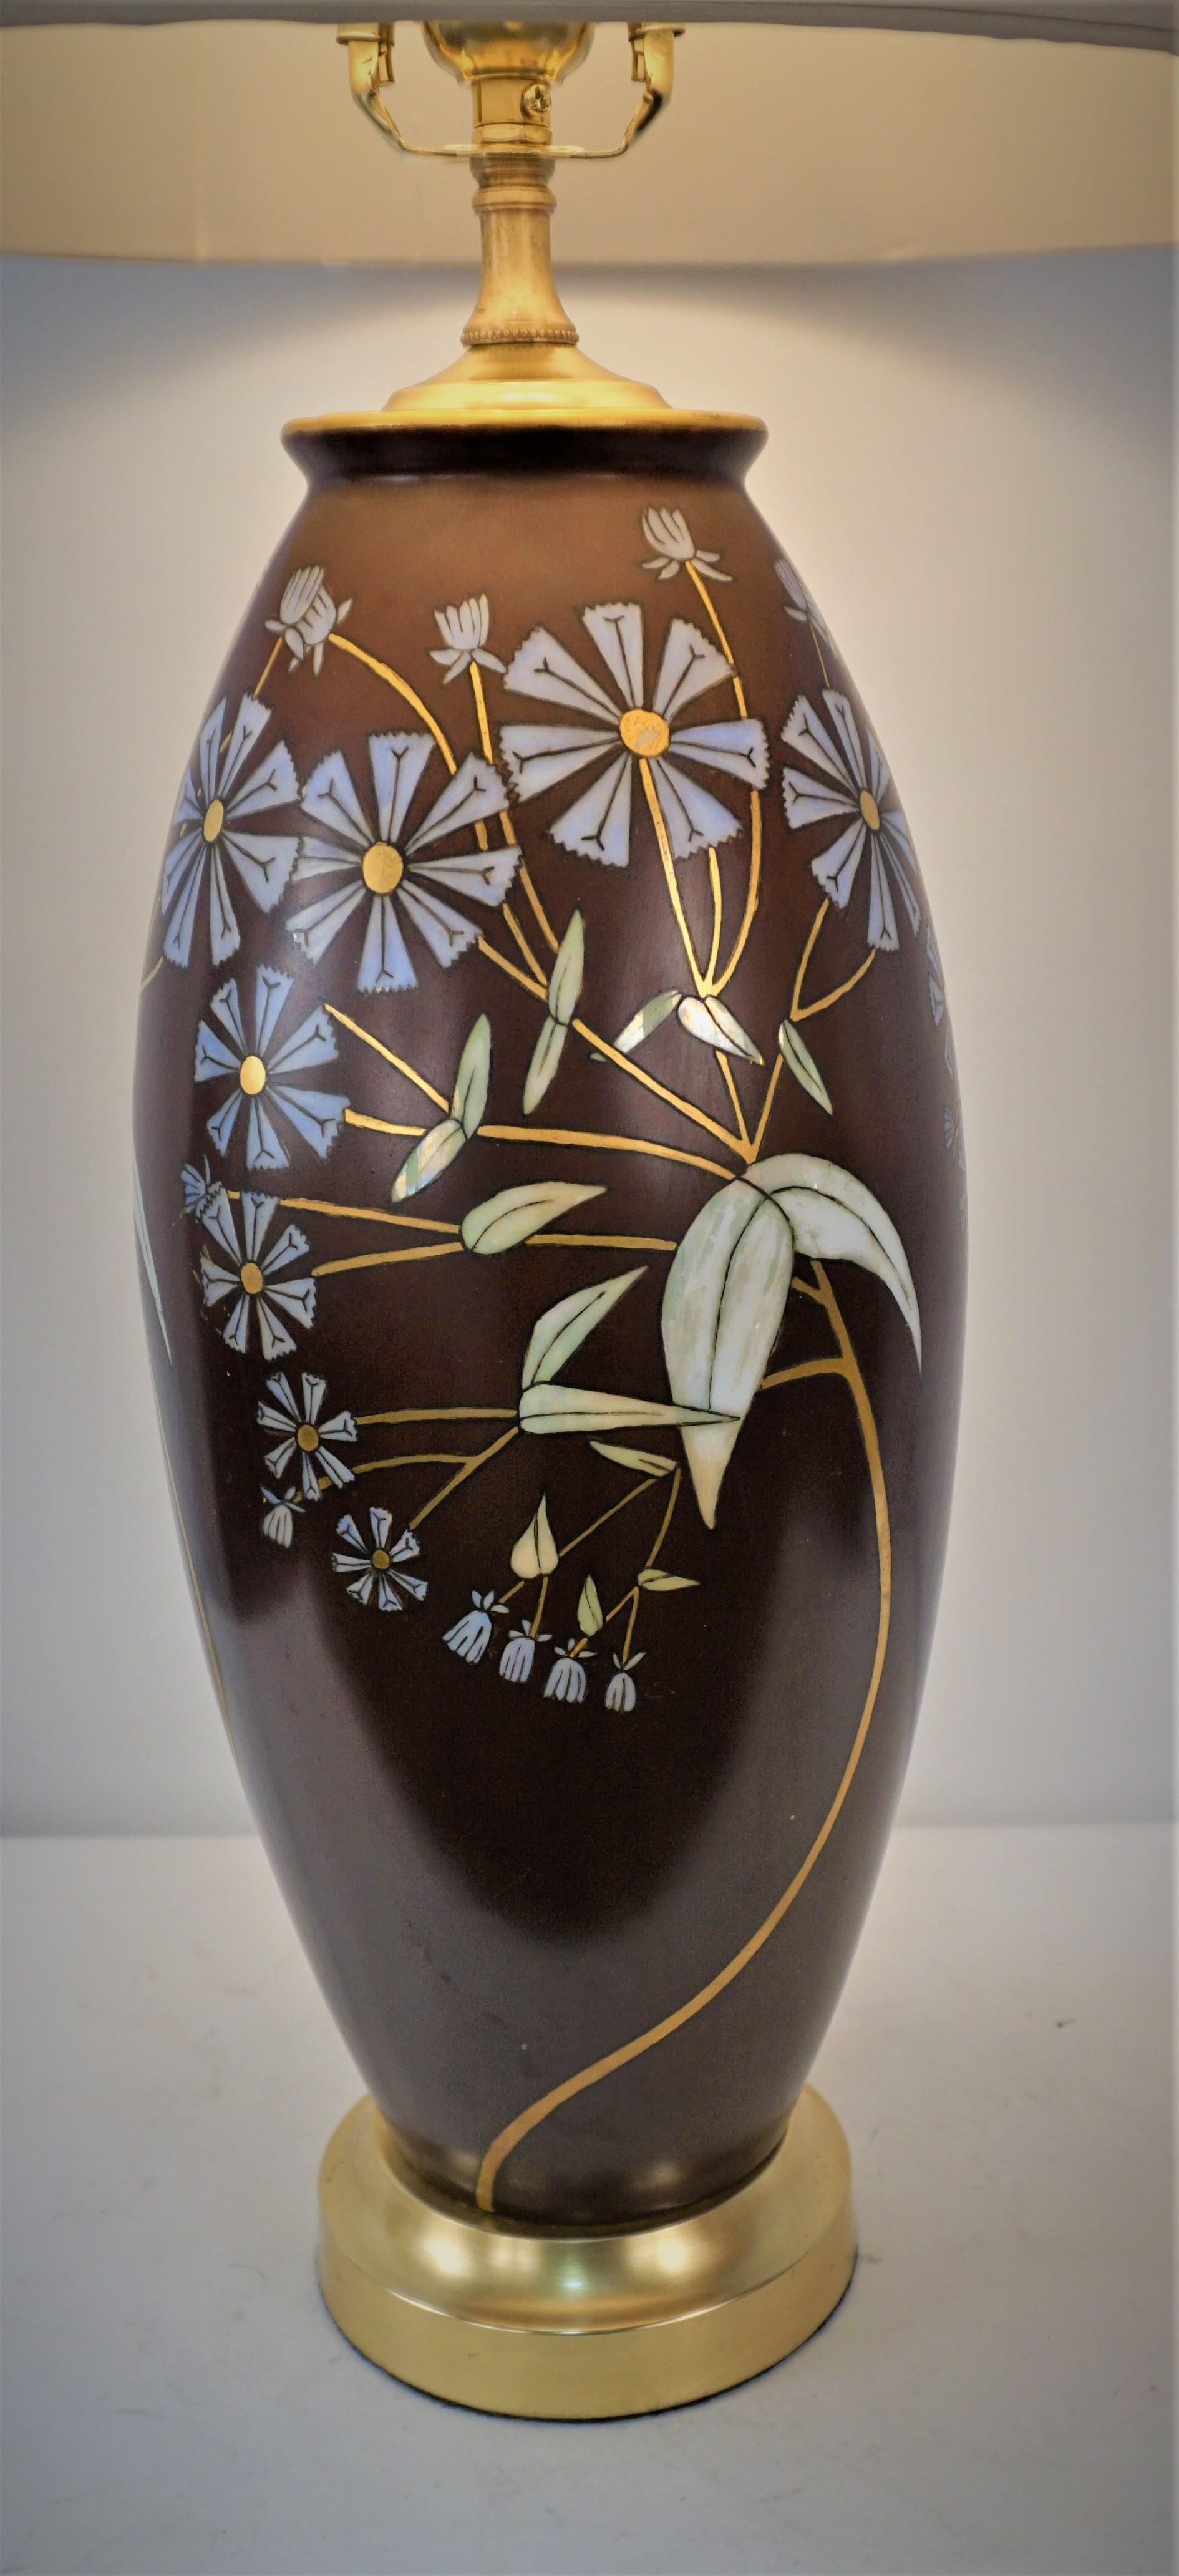 Magnifique vase en porcelaine de Sèvres des années 1920 transformé en lampe de table et auquel on a ajouté plus tard une base en bronze.
Câblage professionnel avec prise à trois voies et abat-jour en soie.